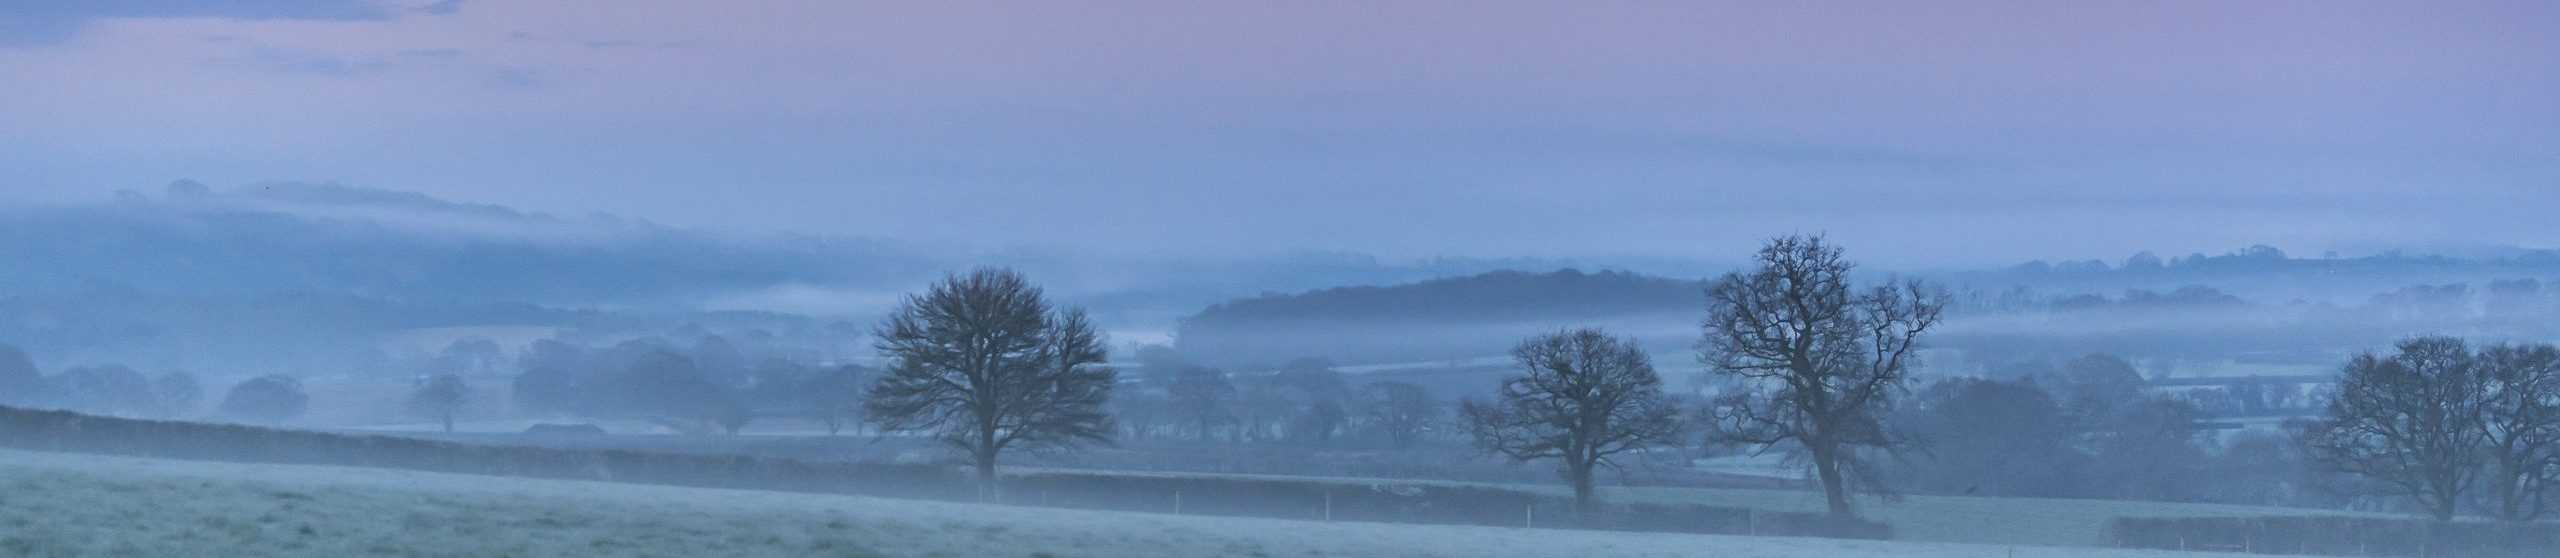 Misty morning across farm fields